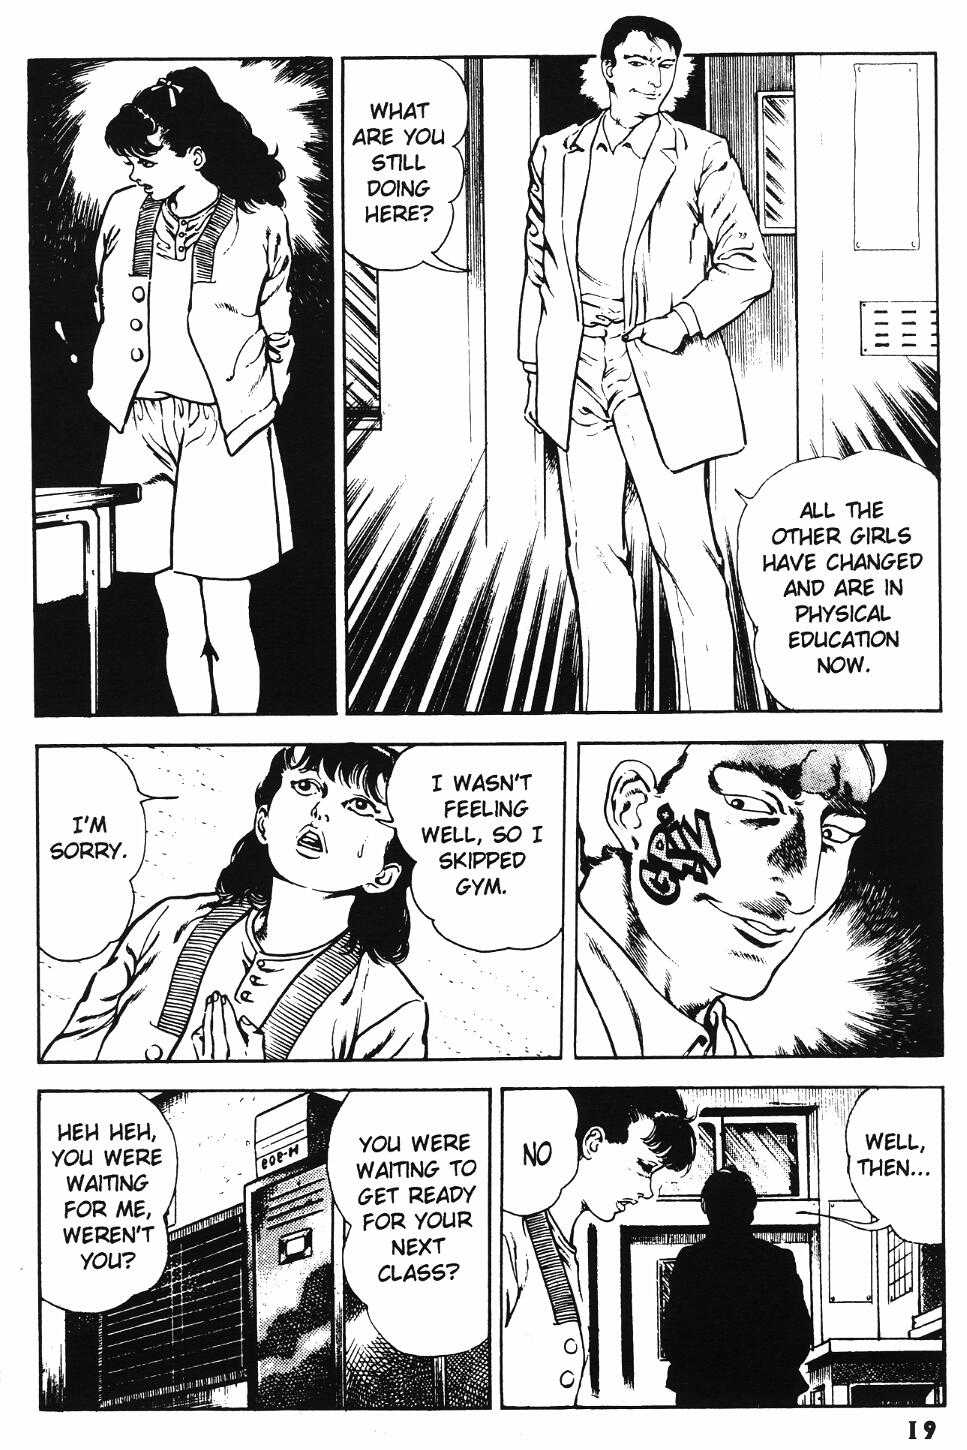 [Manga18][Toshio Maeda] Urotsukidoji - Return of the Overfiend No 1 (english) 